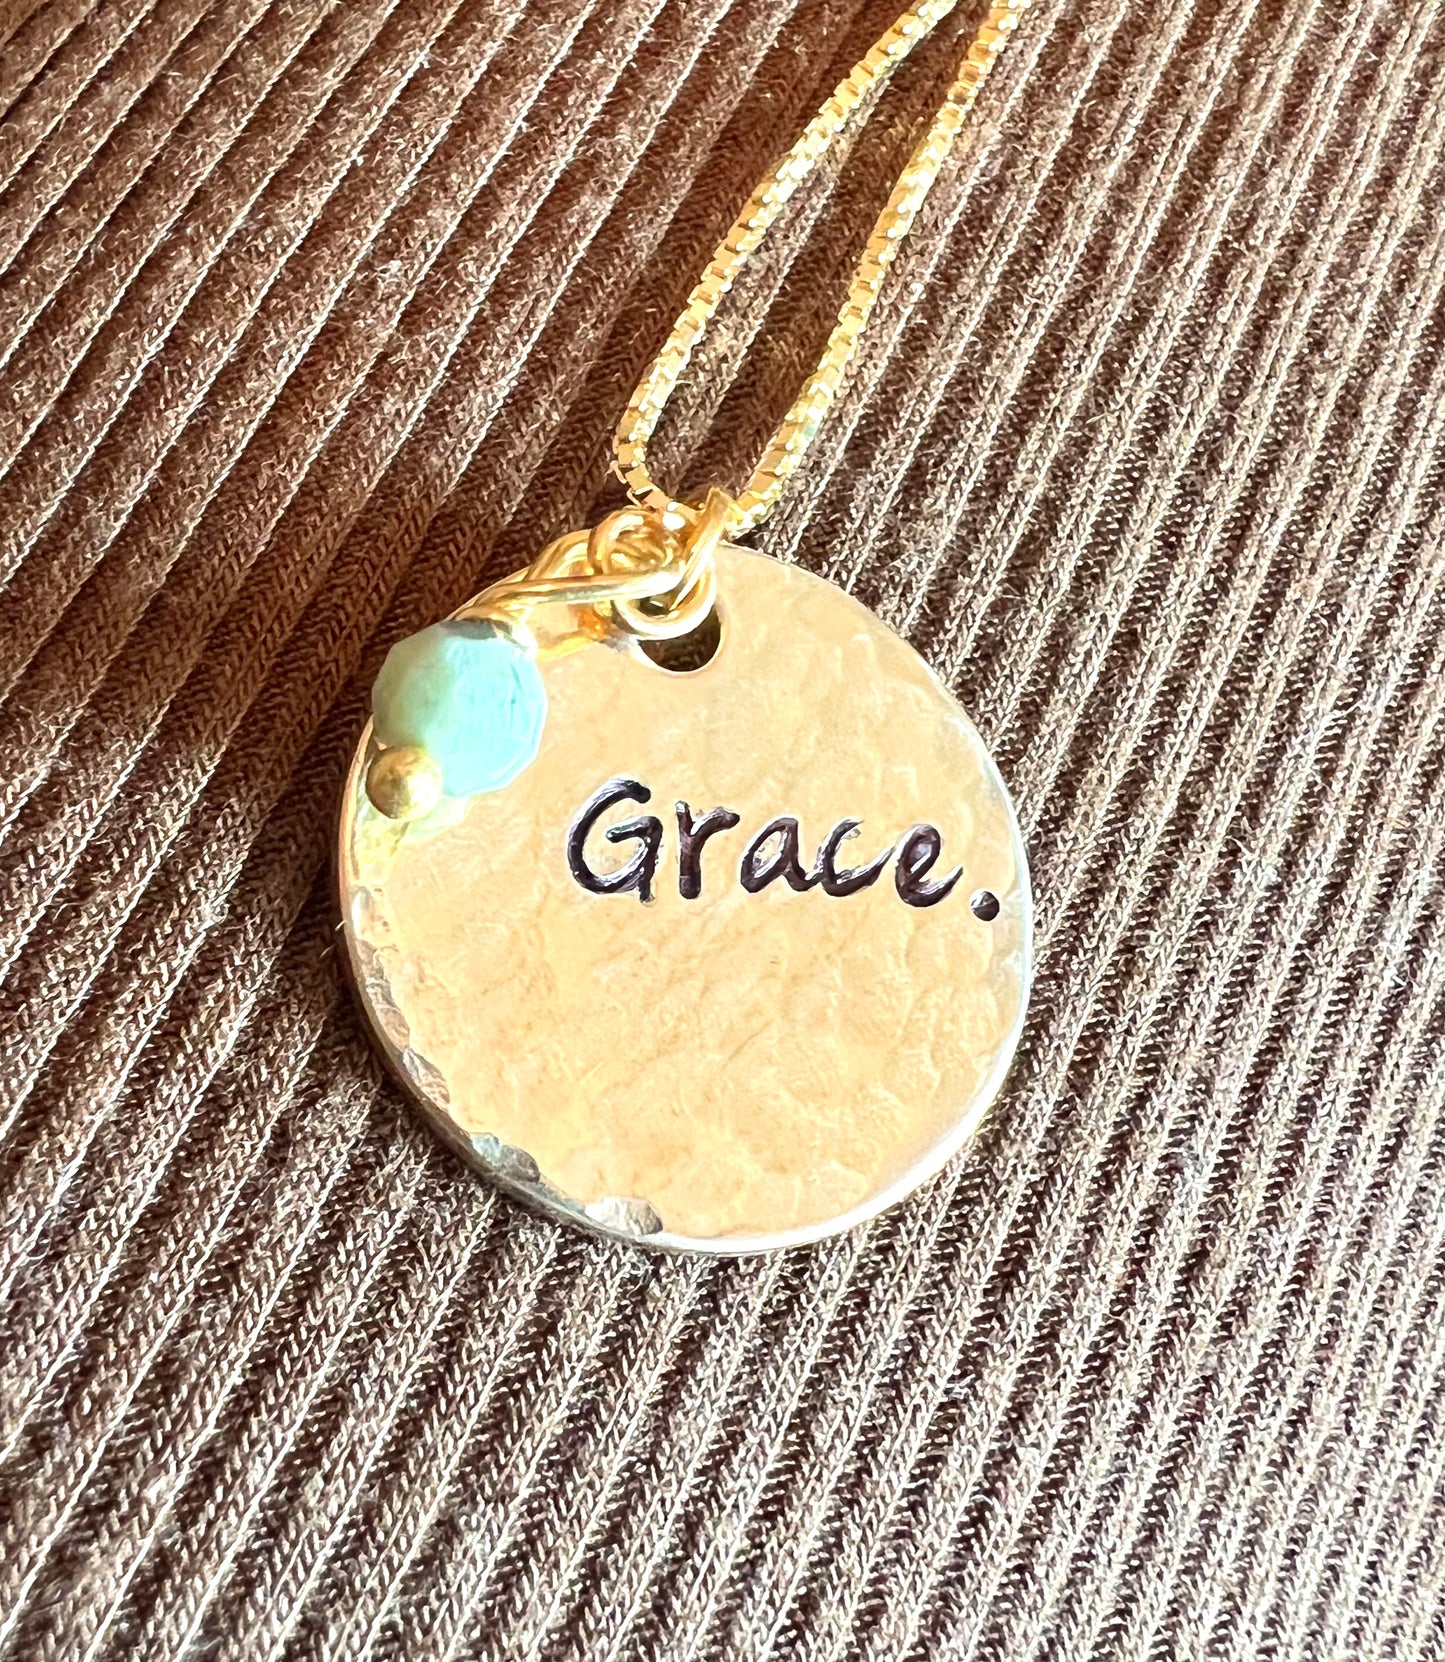 Grace Necklace